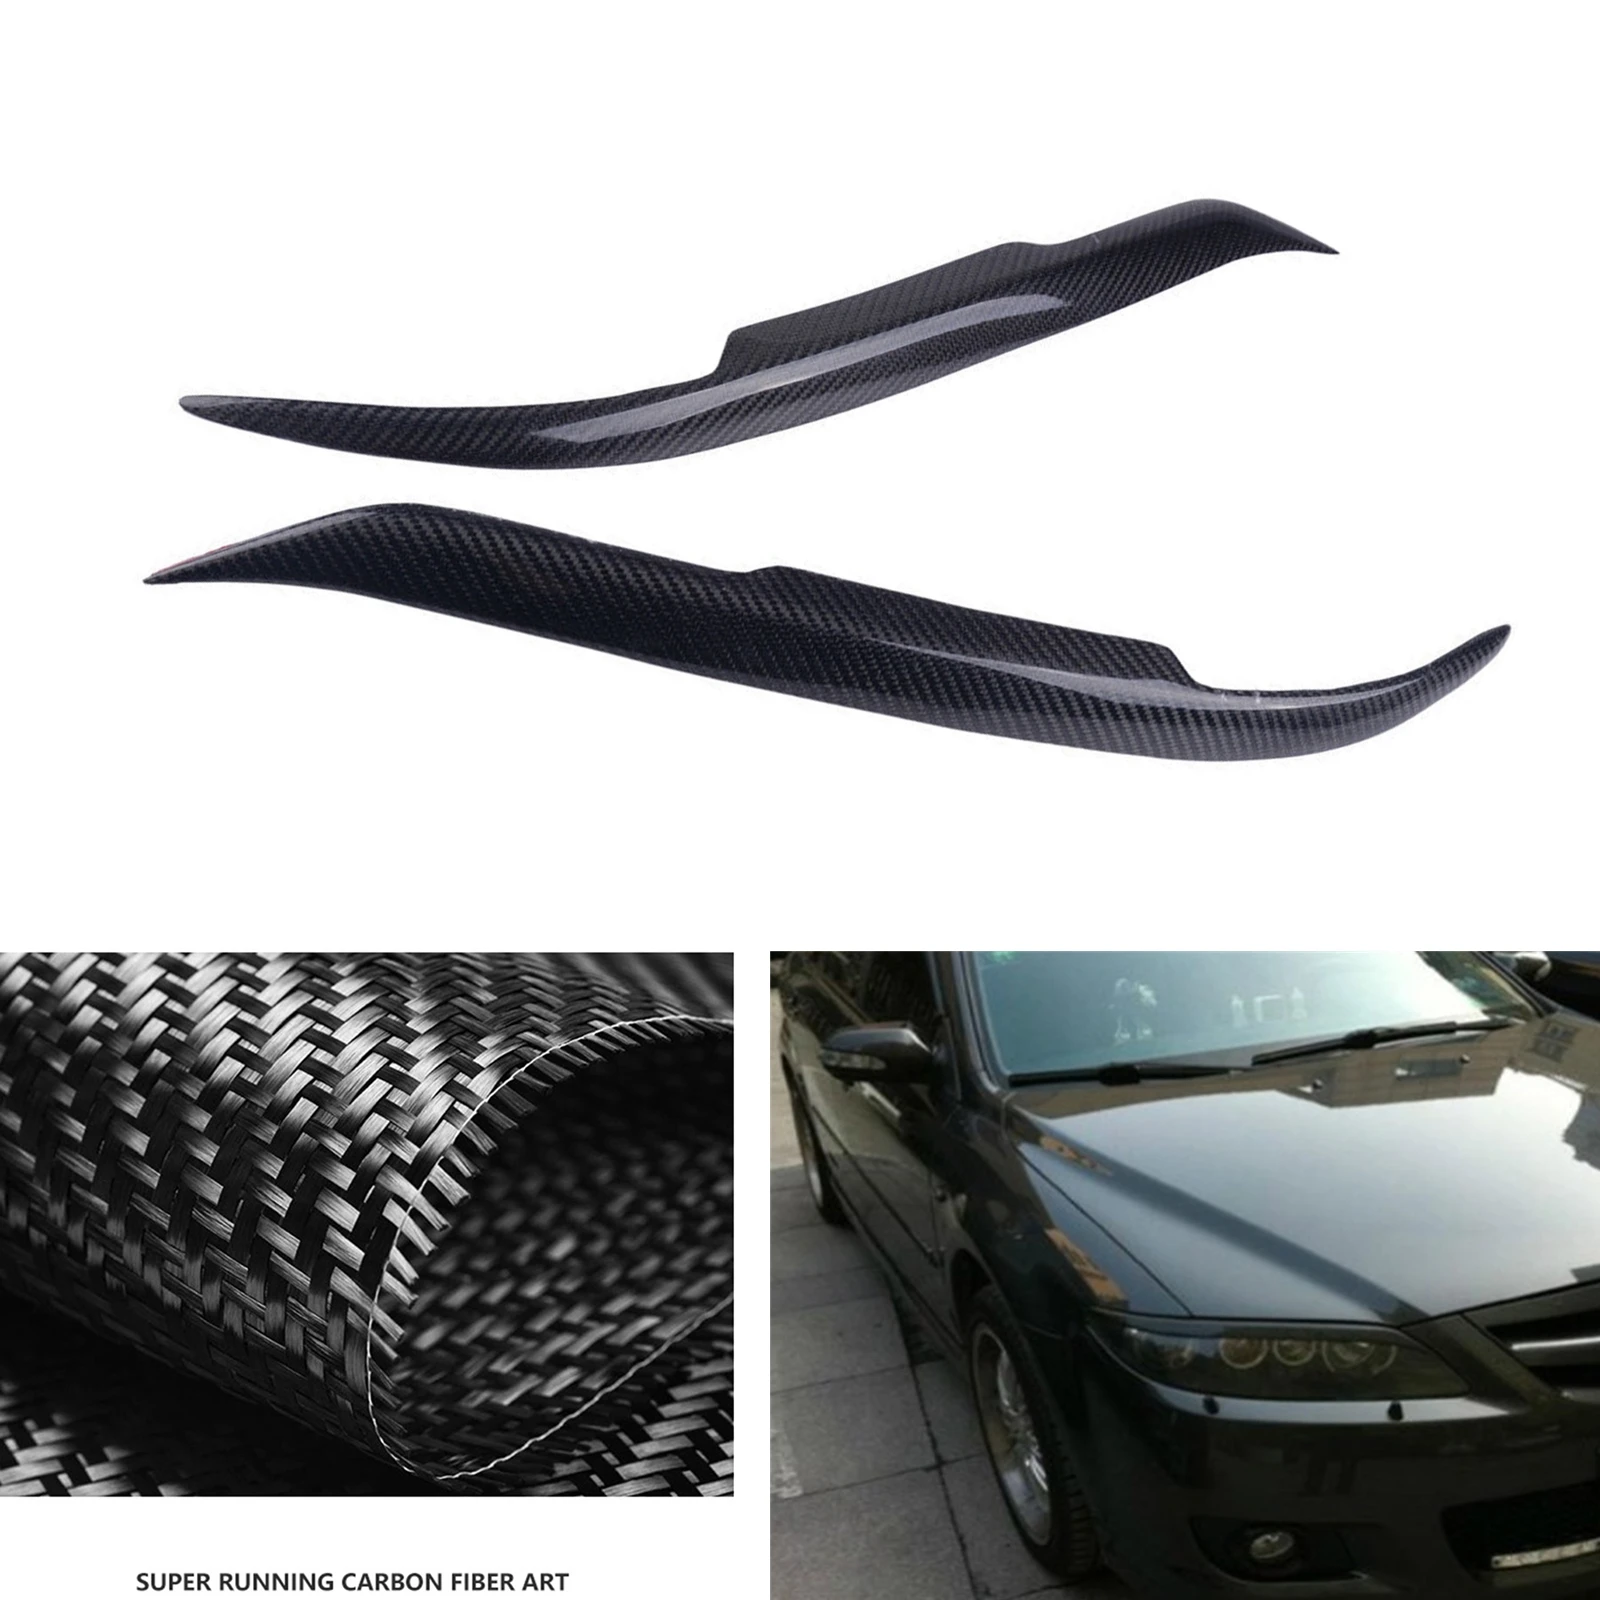 

Для Mazda 6 2003-2013, автомобильная фара, налобный фонарь, веко, отделка, углеродное волокно, передняя фара головного света, лампа, крышка, полоса для бровей, наклейка